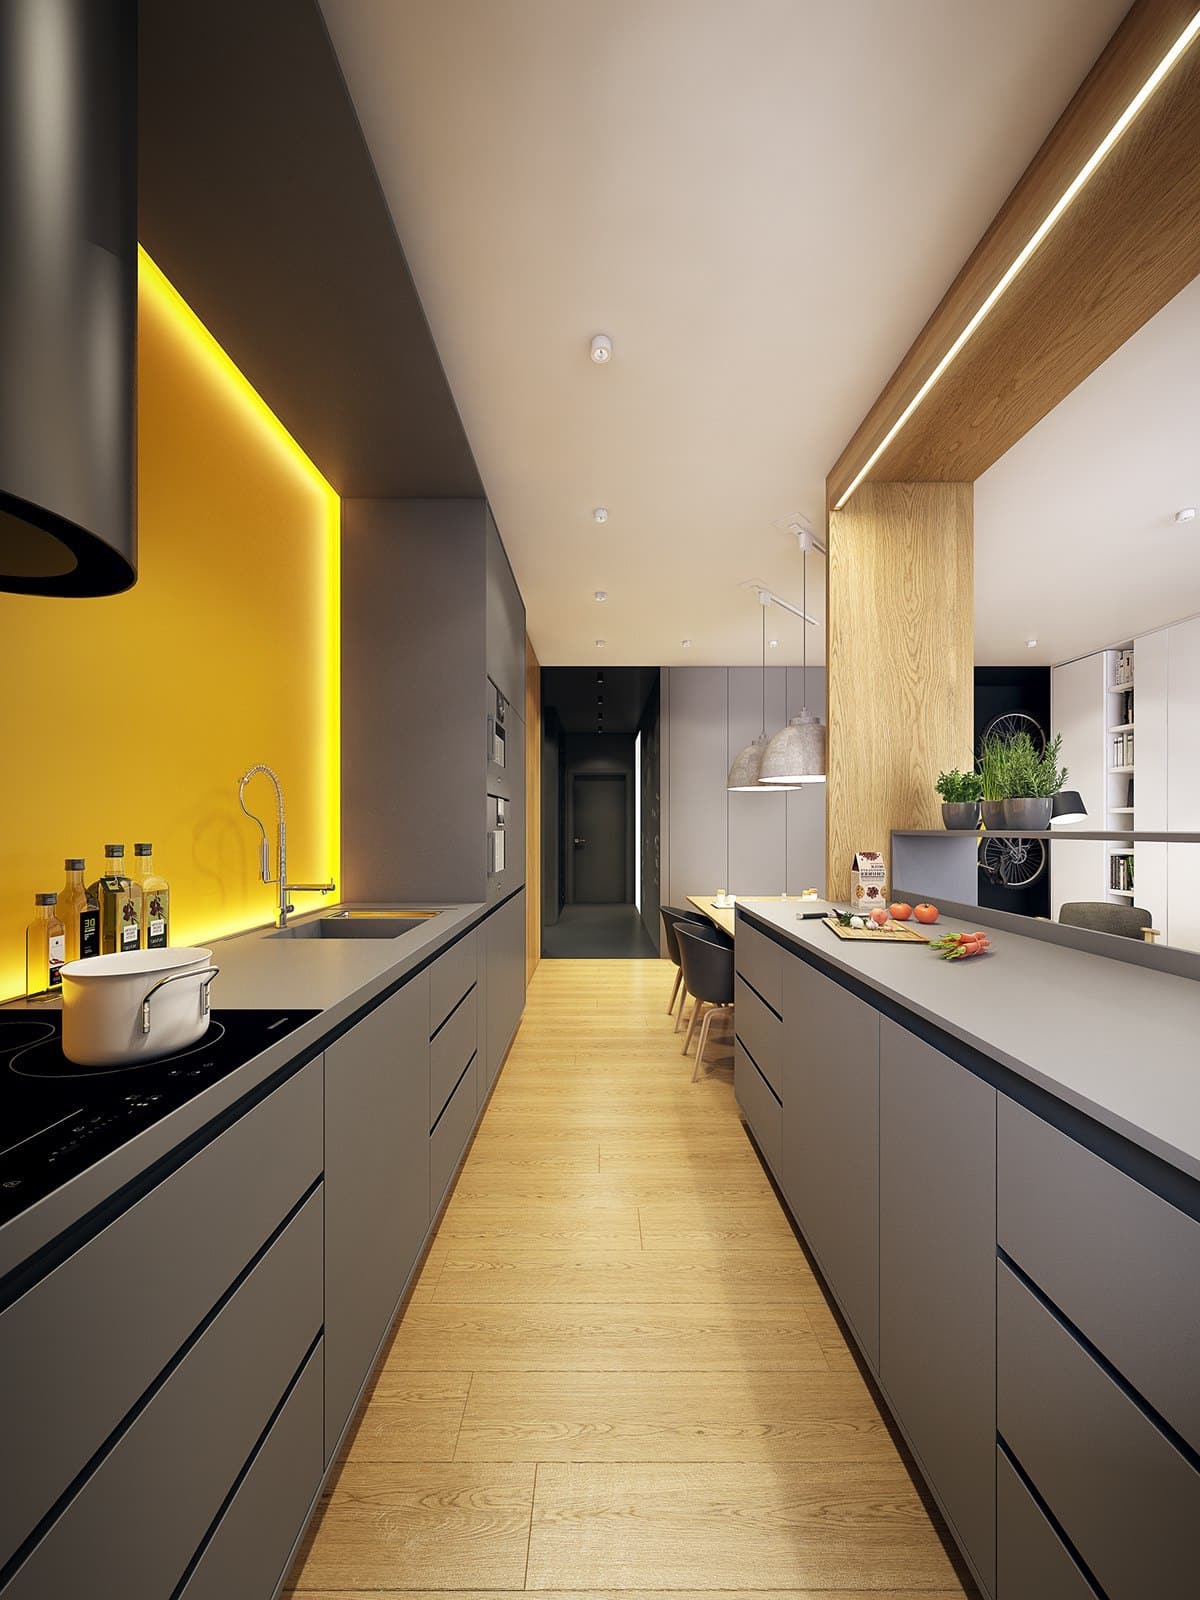 Современный дизайн узкой кухни в нежных желто-серых оттенках